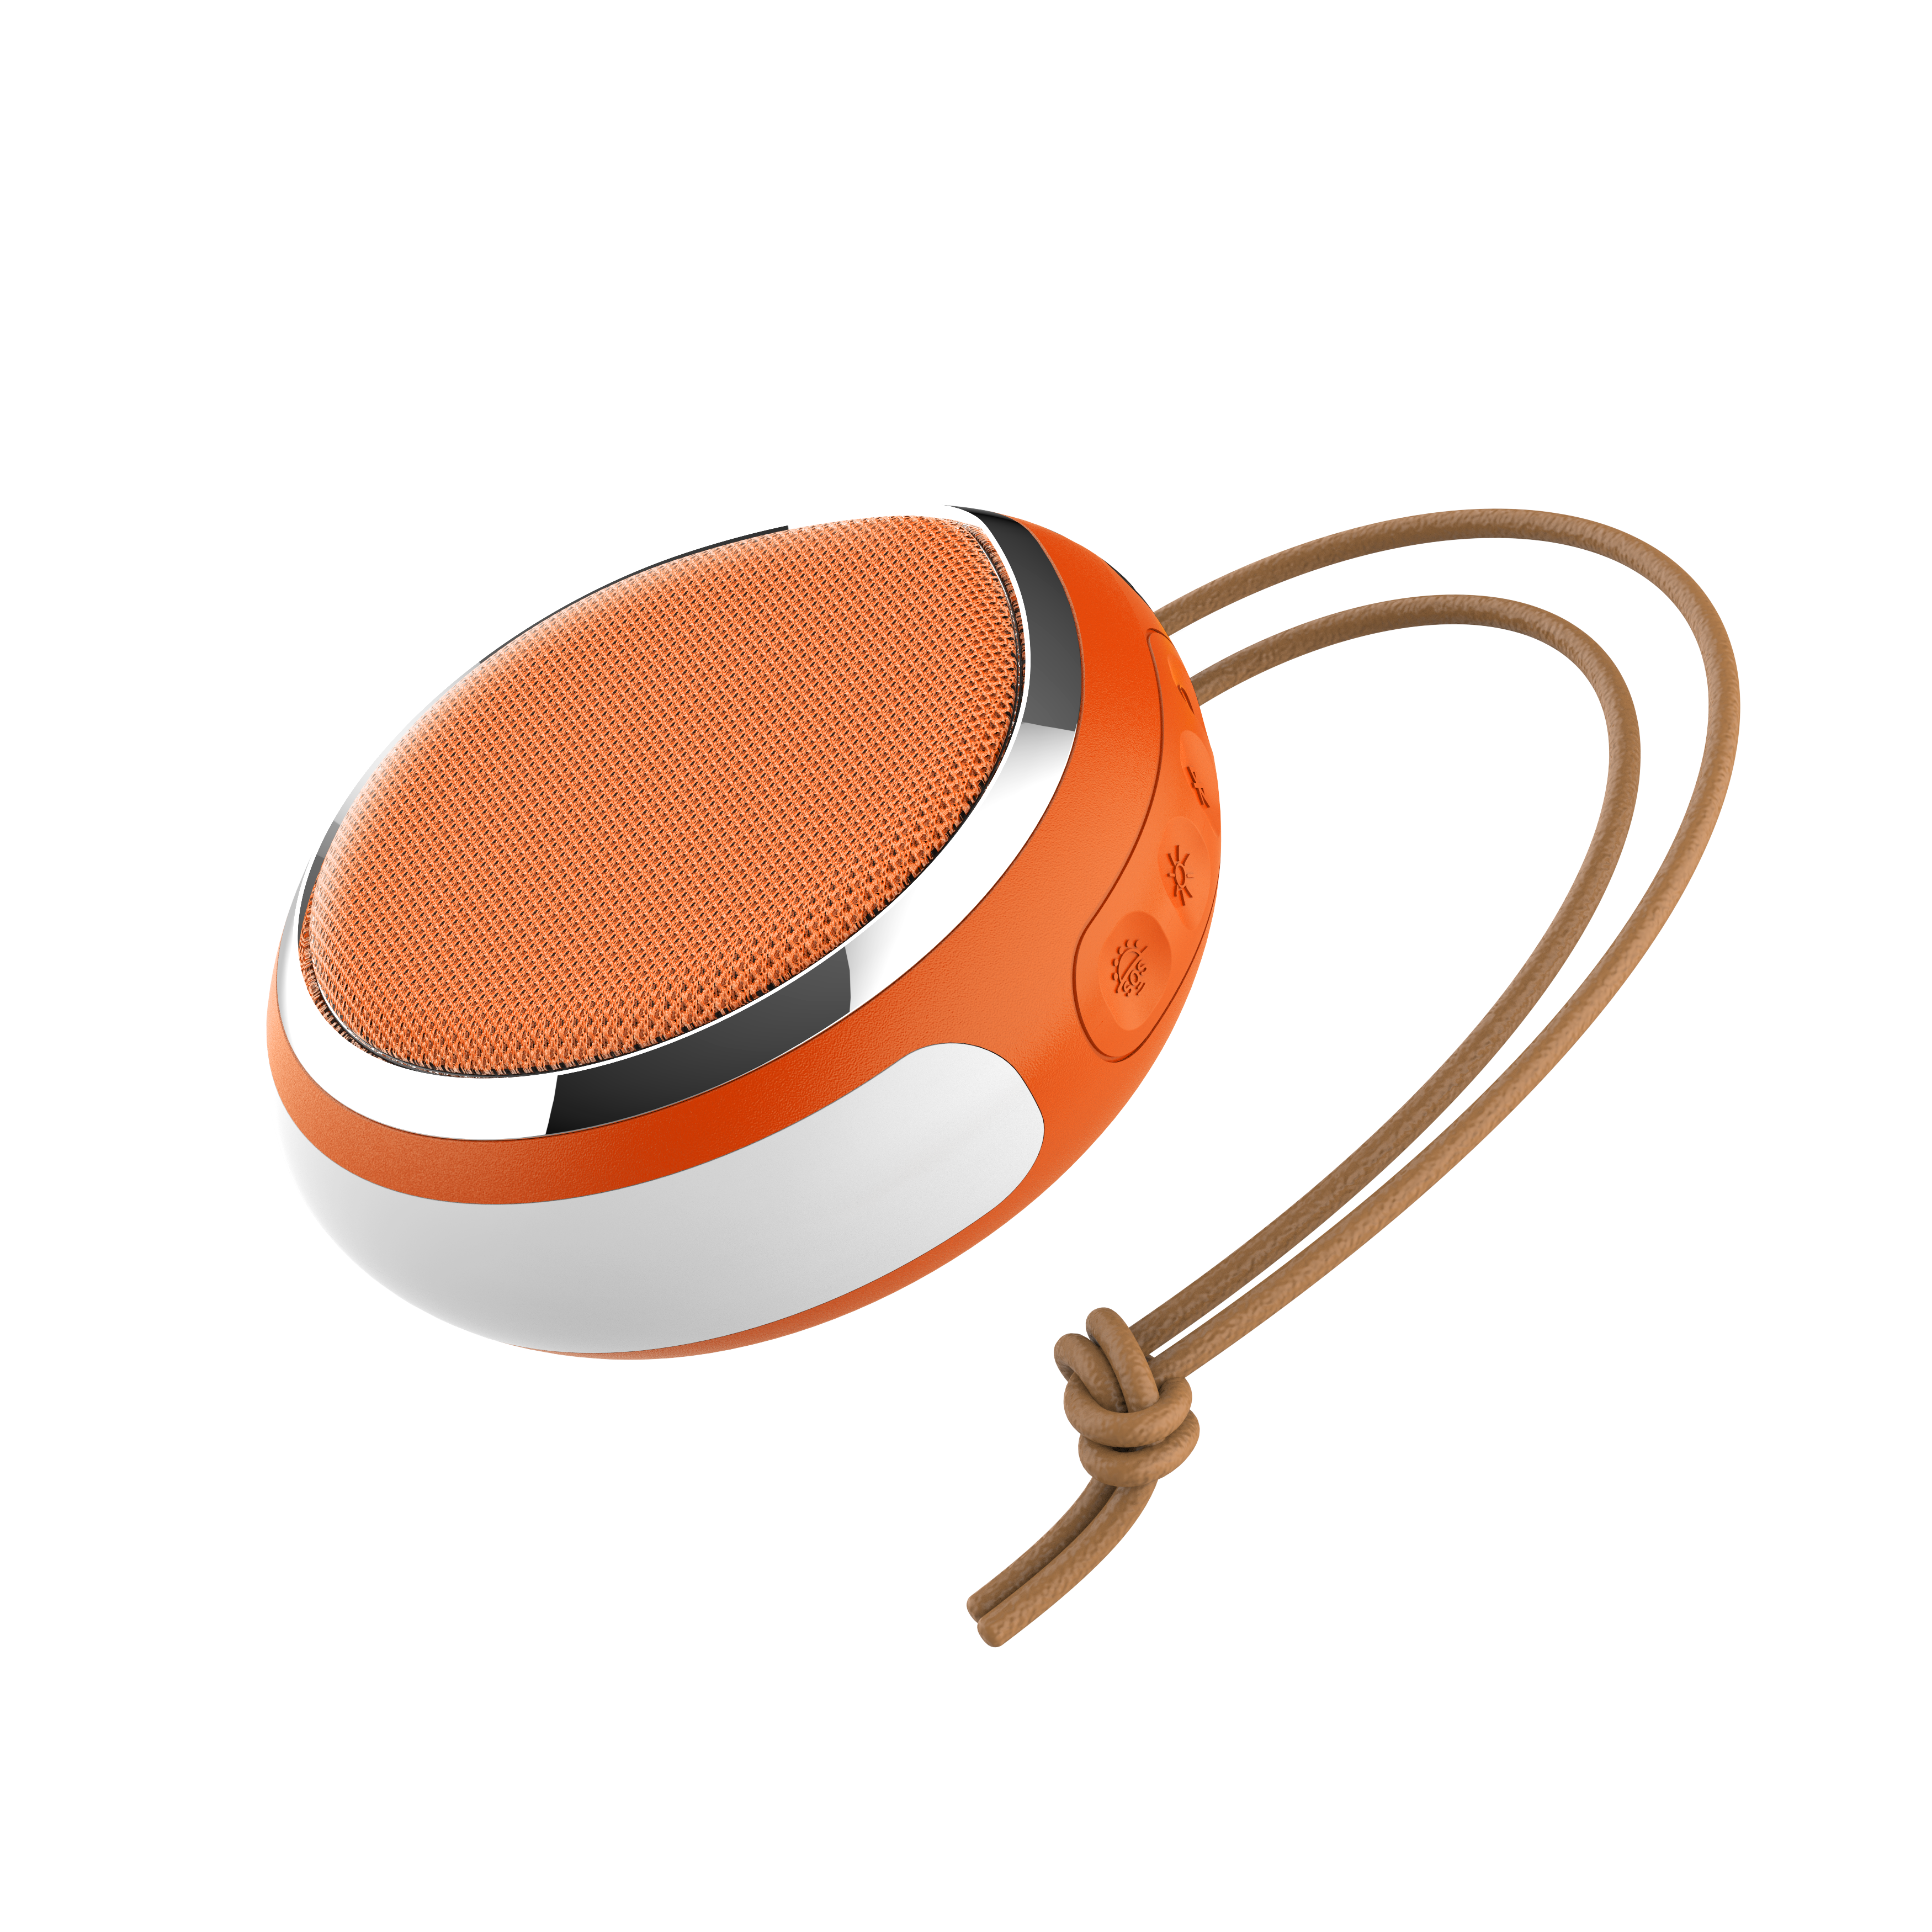 Trenbader Bravo Go Bluetooth Speaker with Lantern